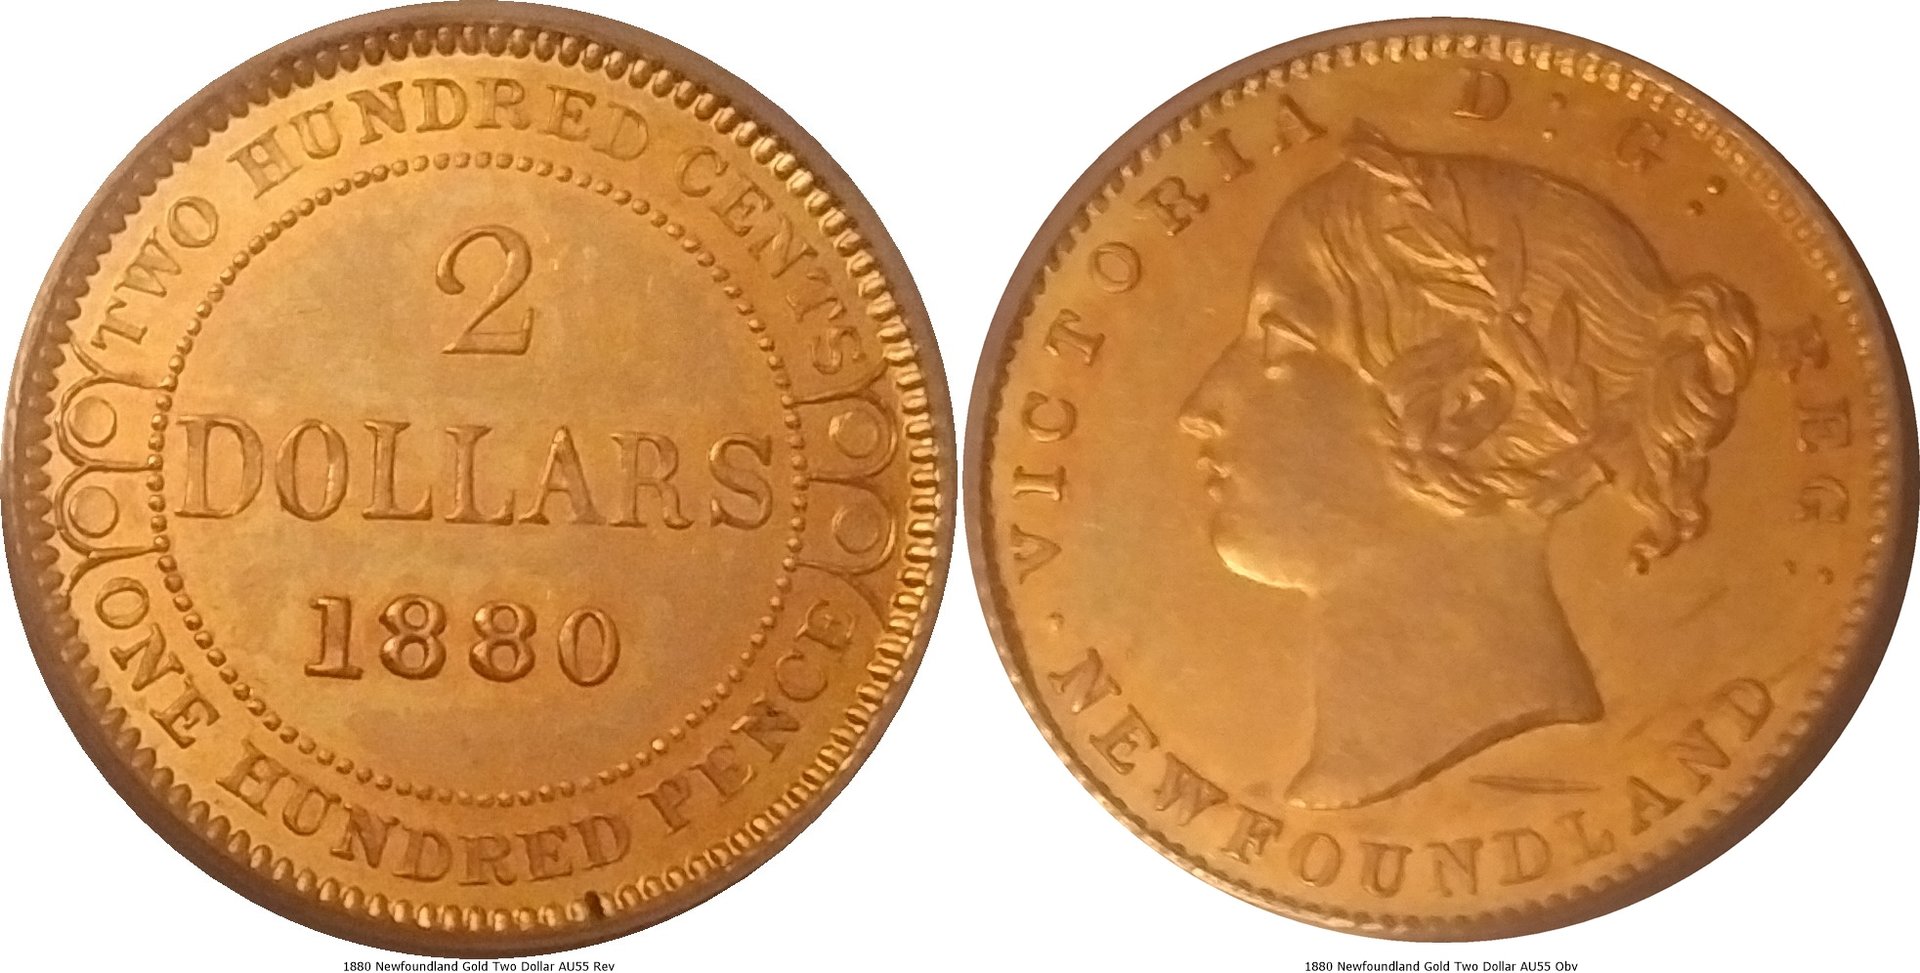 1880 Newfoundland Gold Two Dollar AU55 -tile.jpg